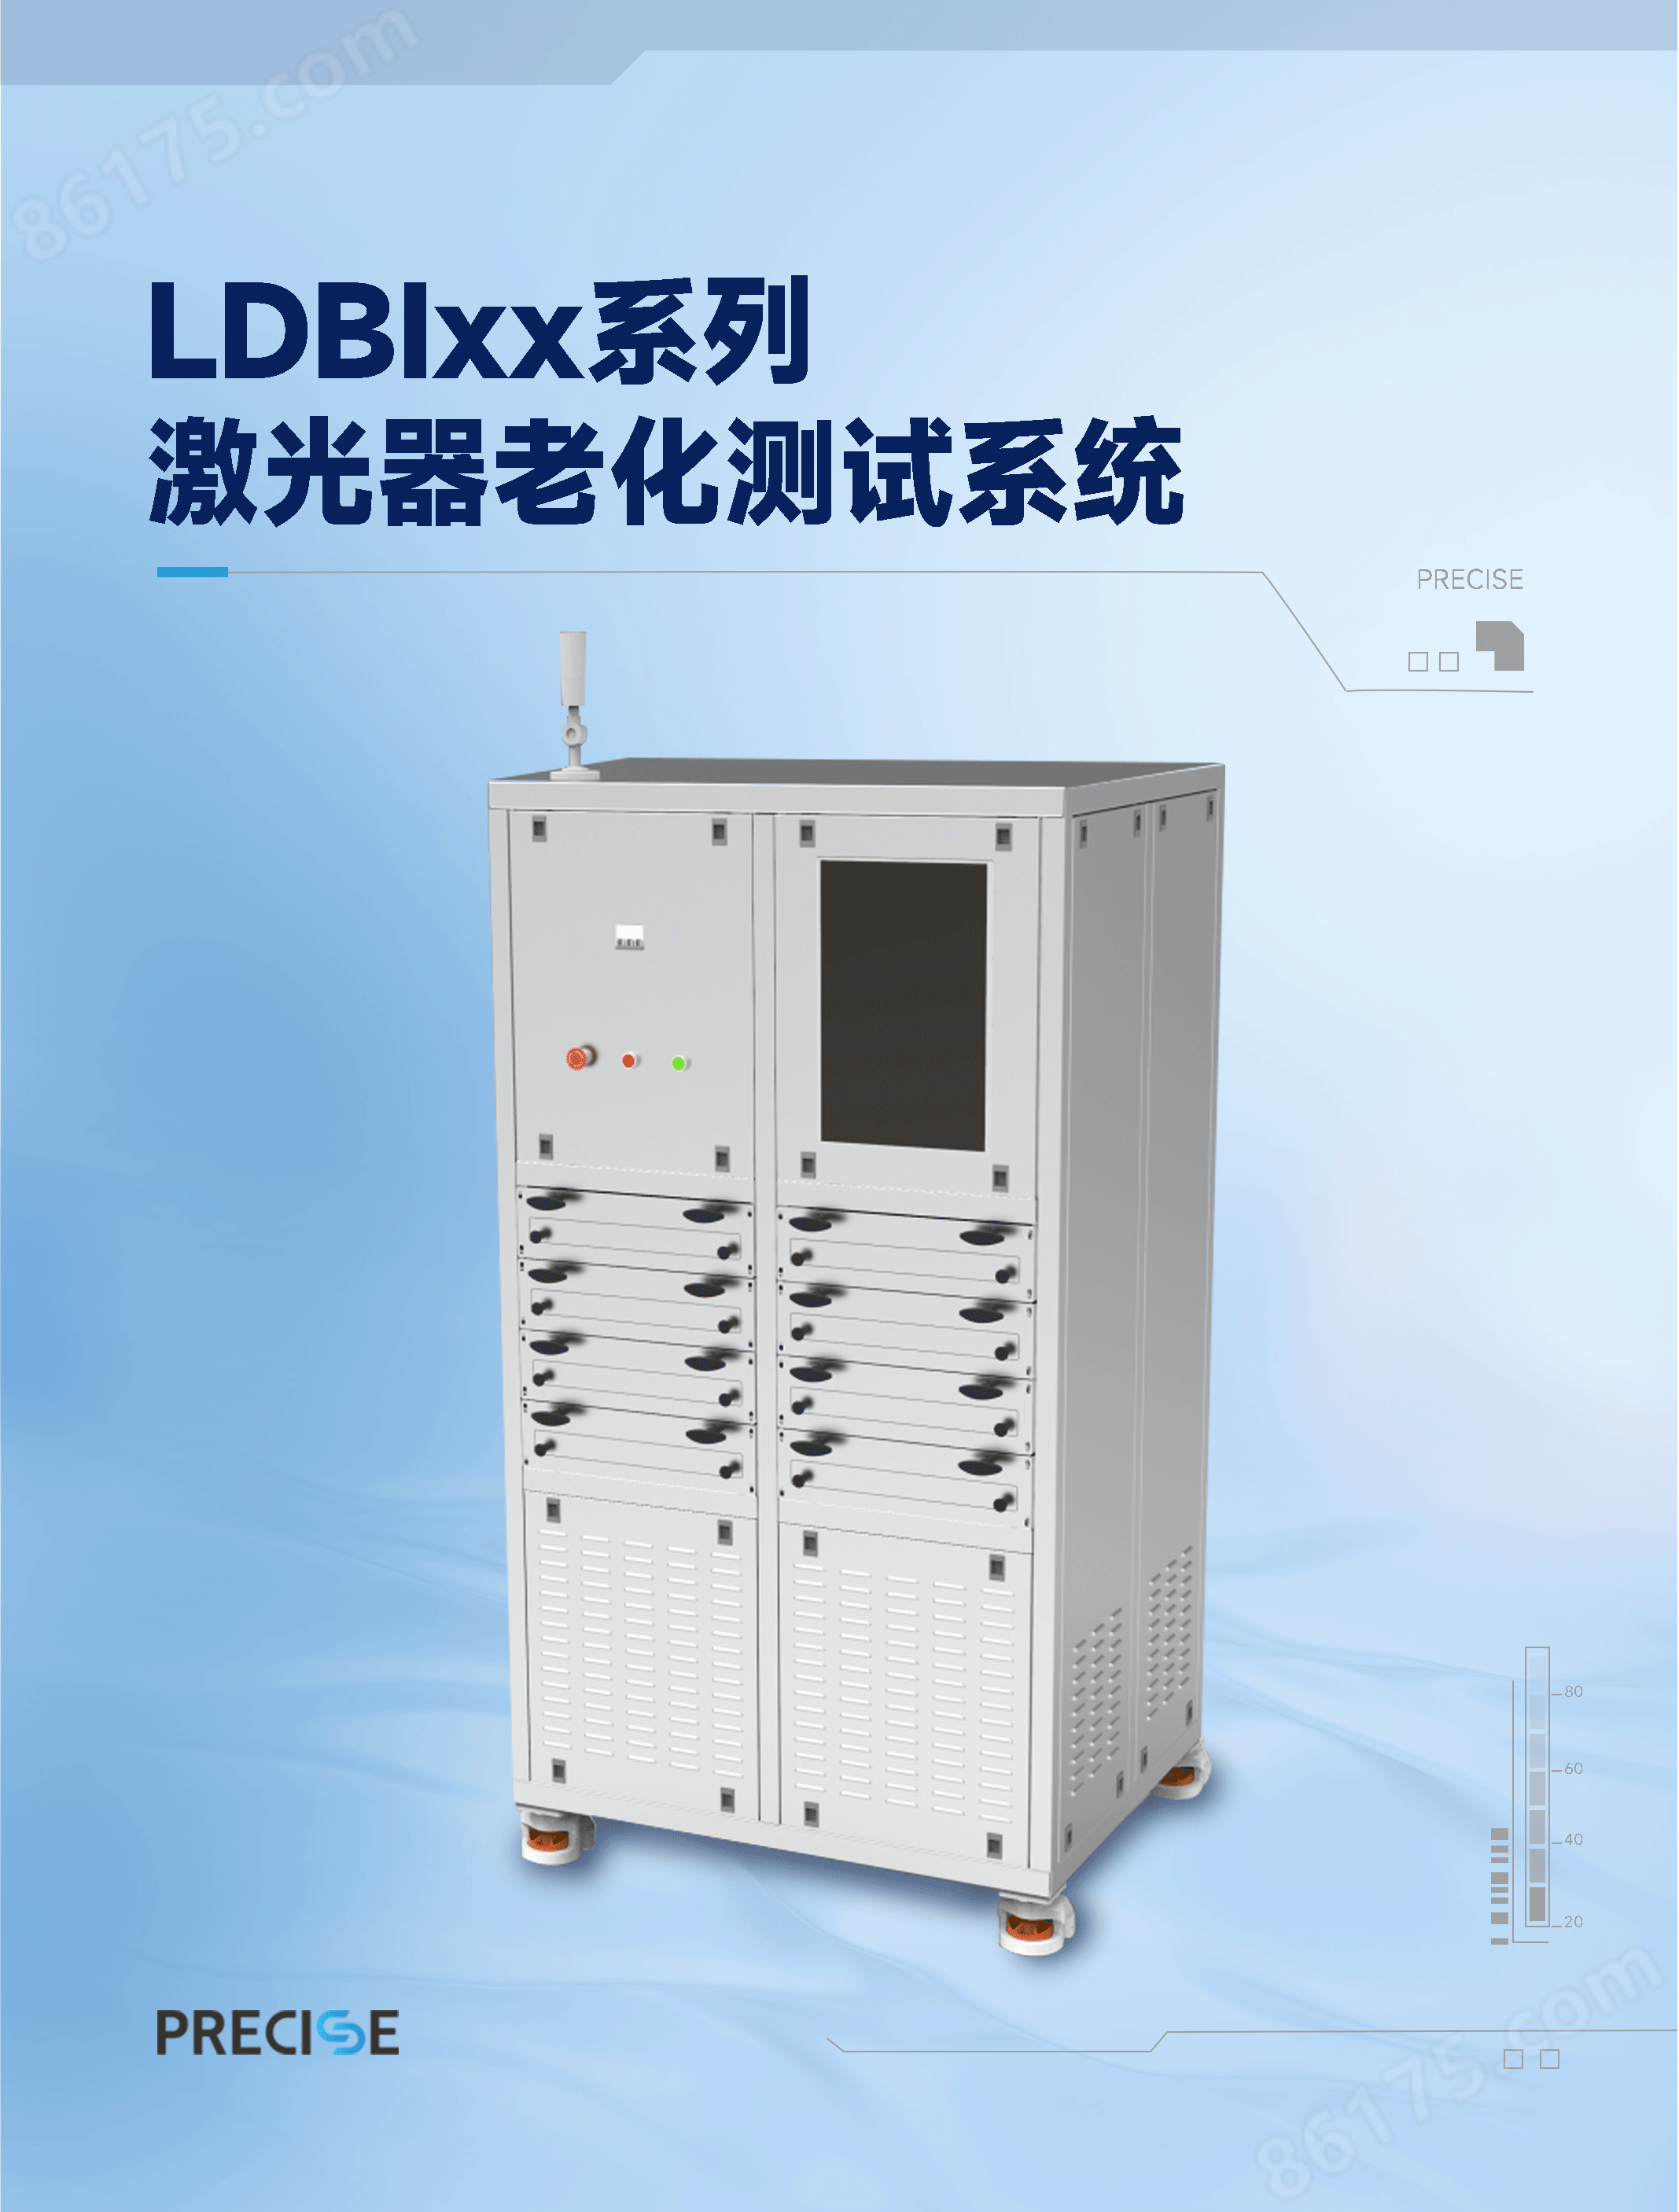 LDBIxx系列激光器老化测试系统_01.png